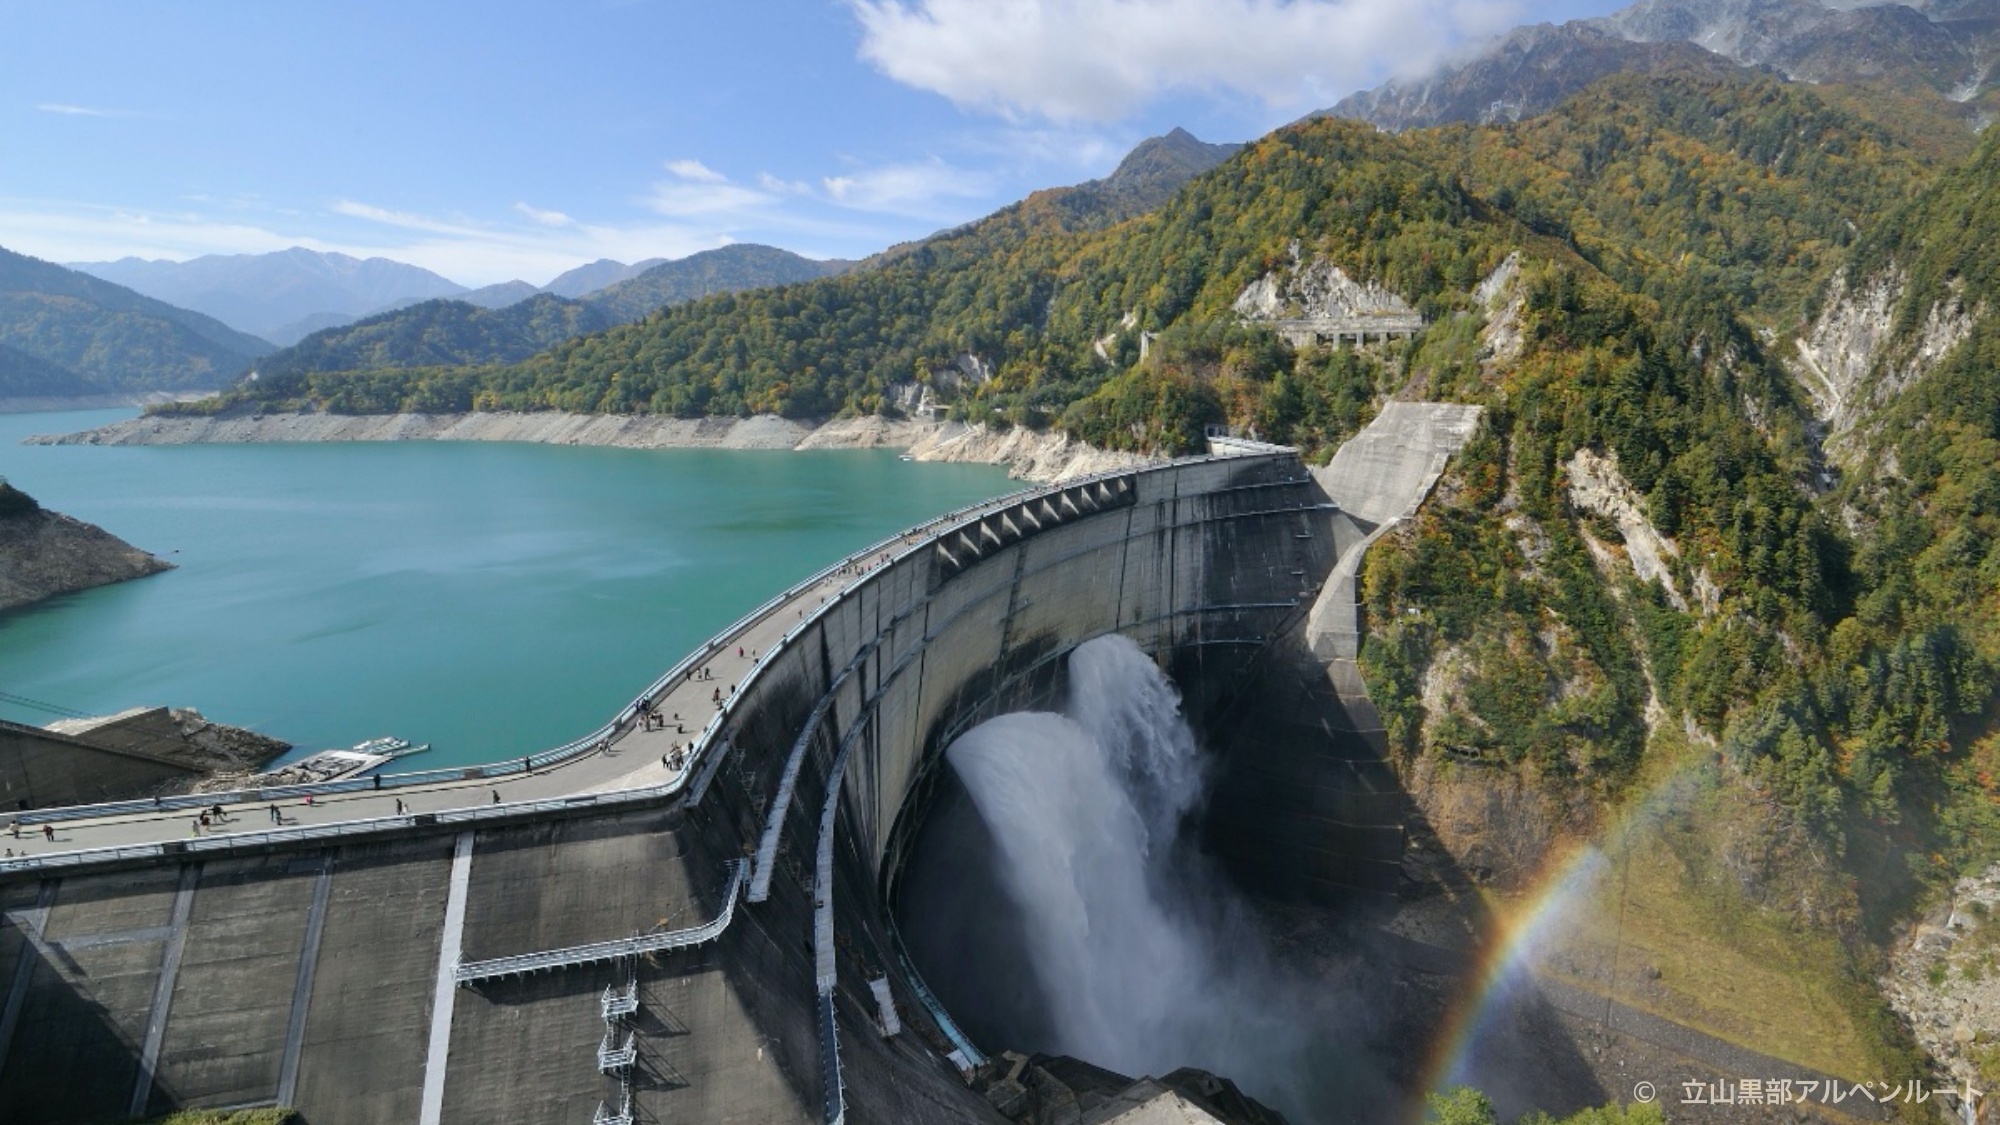 日本一の高さを誇る「黒部ダム」